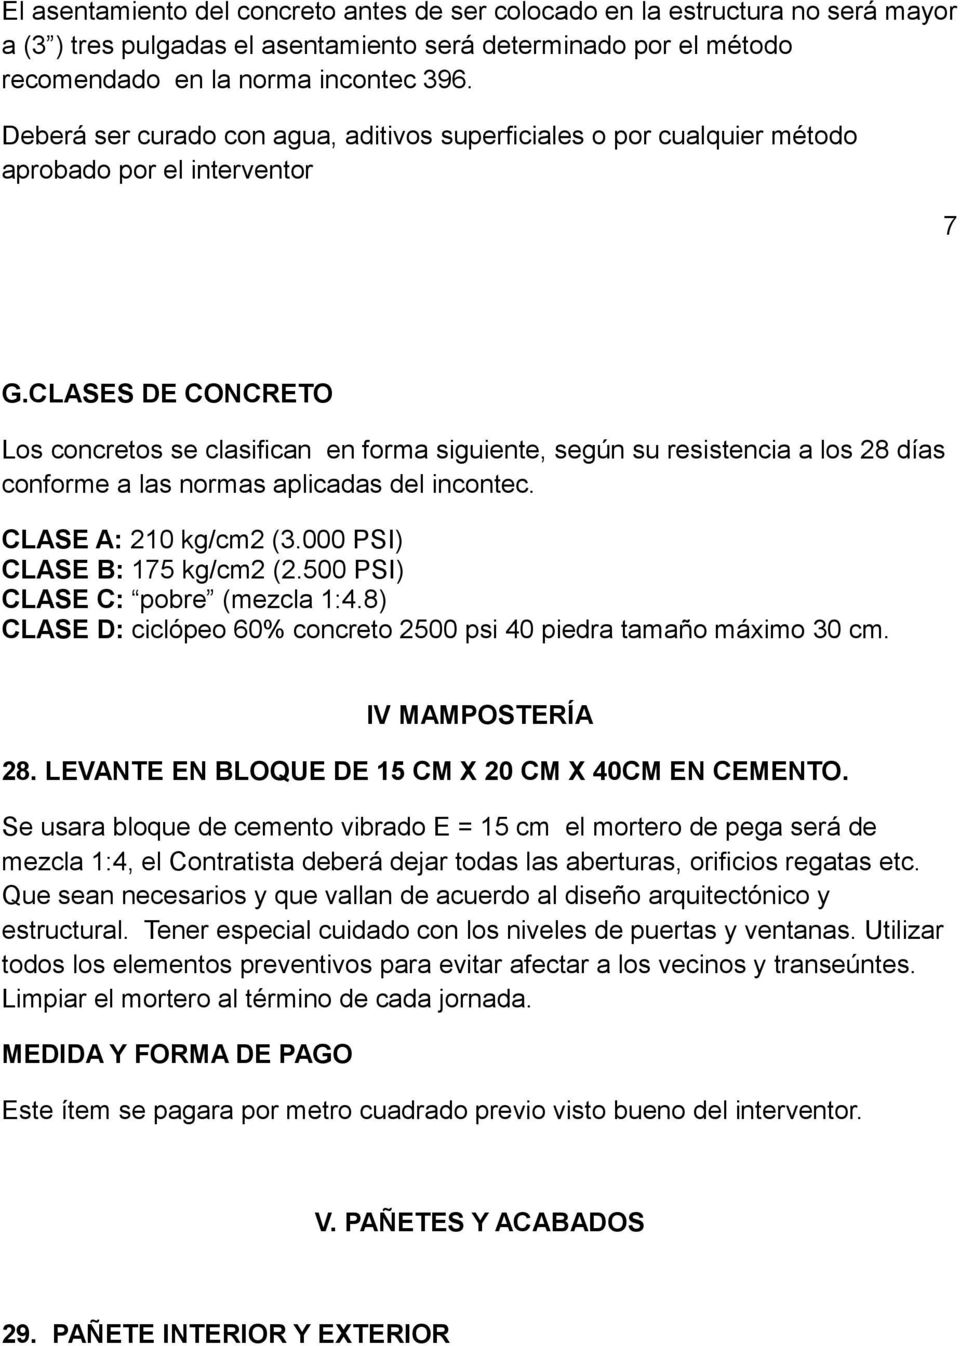 CLASES DE CONCRETO Los concretos se clasifican en forma siguiente, según su resistencia a los 28 días conforme a las normas aplicadas del incontec. CLASE A: 210 kg/cm2 (3.